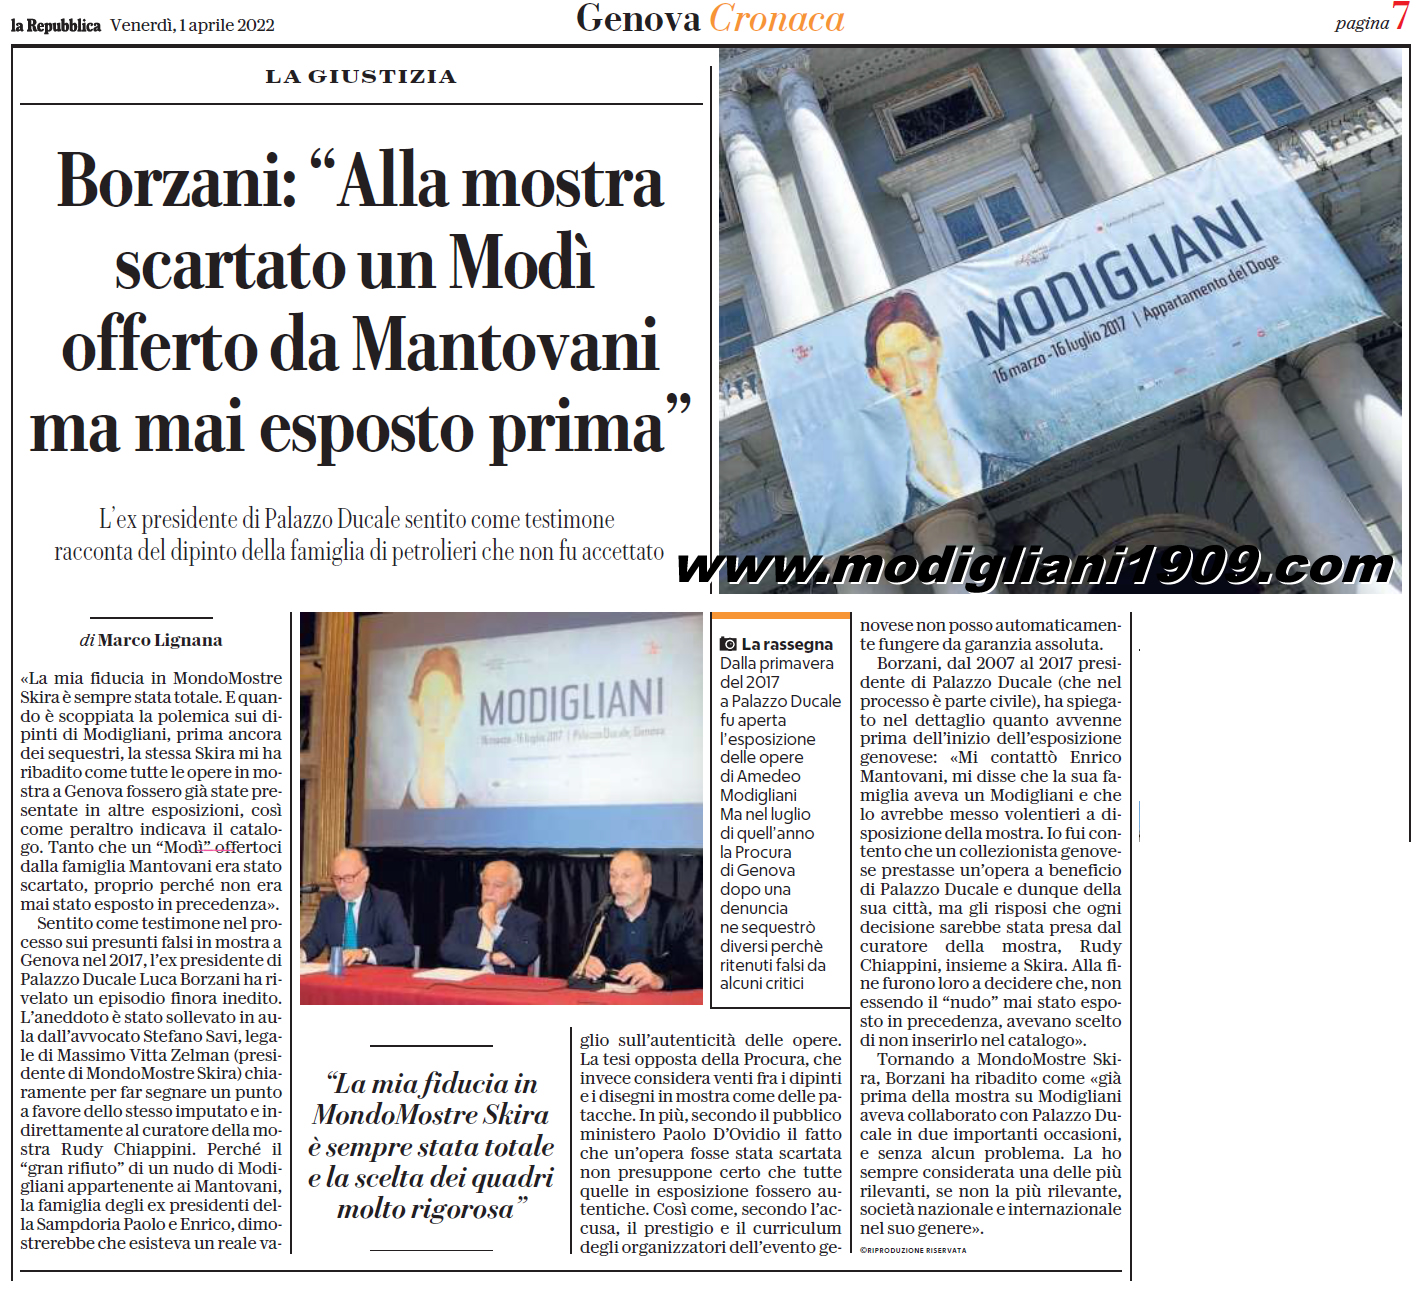 Borzani: alla mostra di Genova scartato un Modigliani offerto da Mantovani